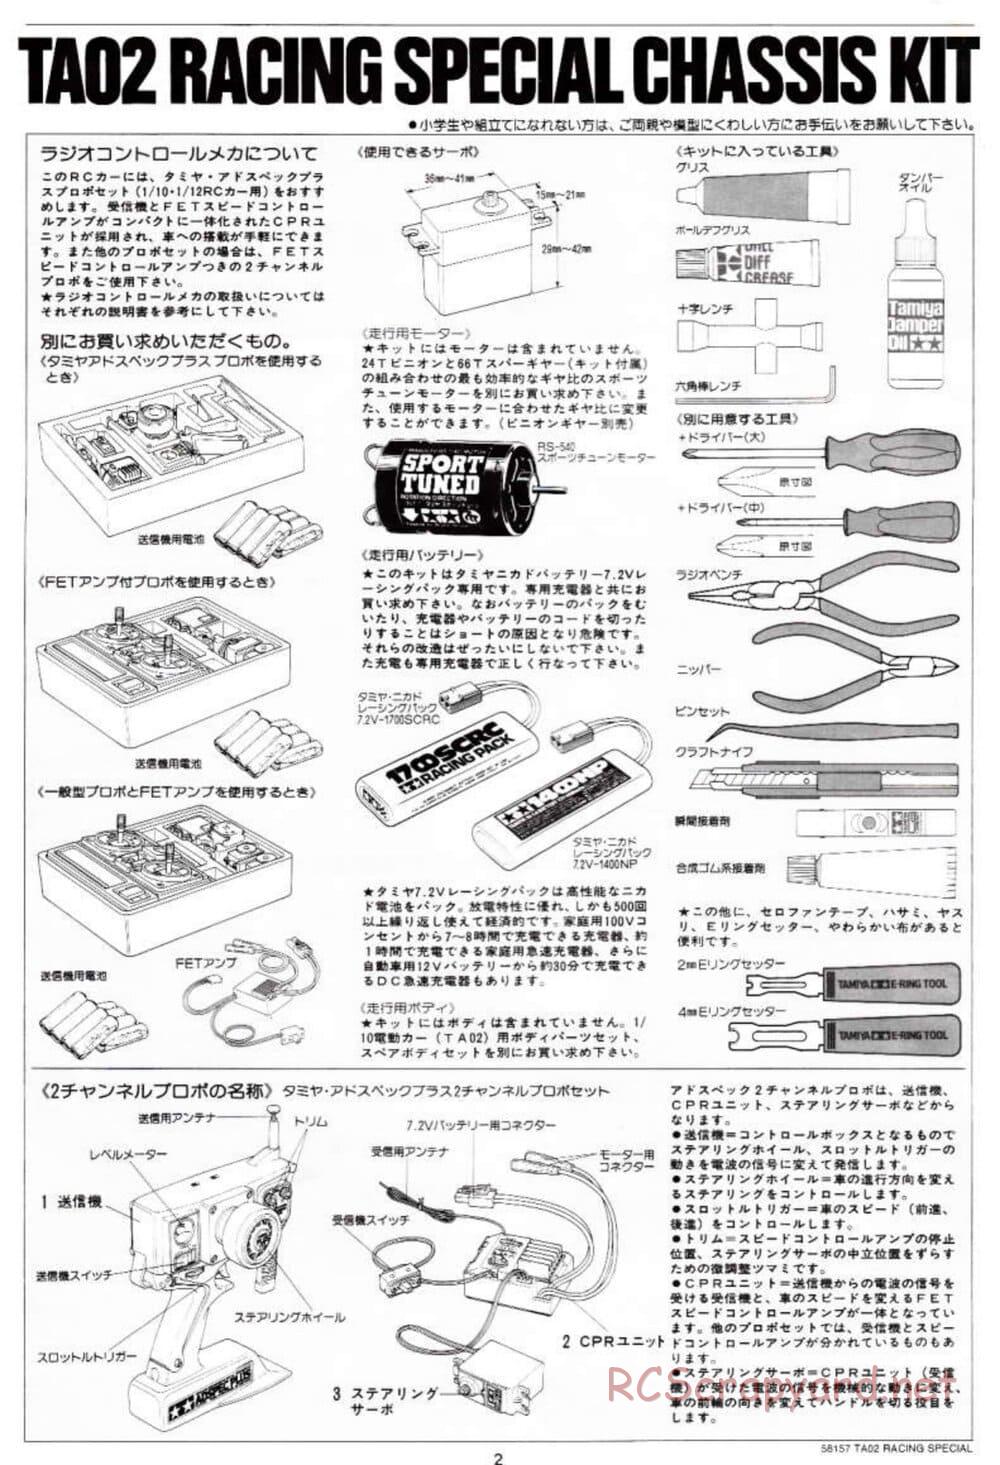 Tamiya - TA-02RS Chassis - Manual - Page 2